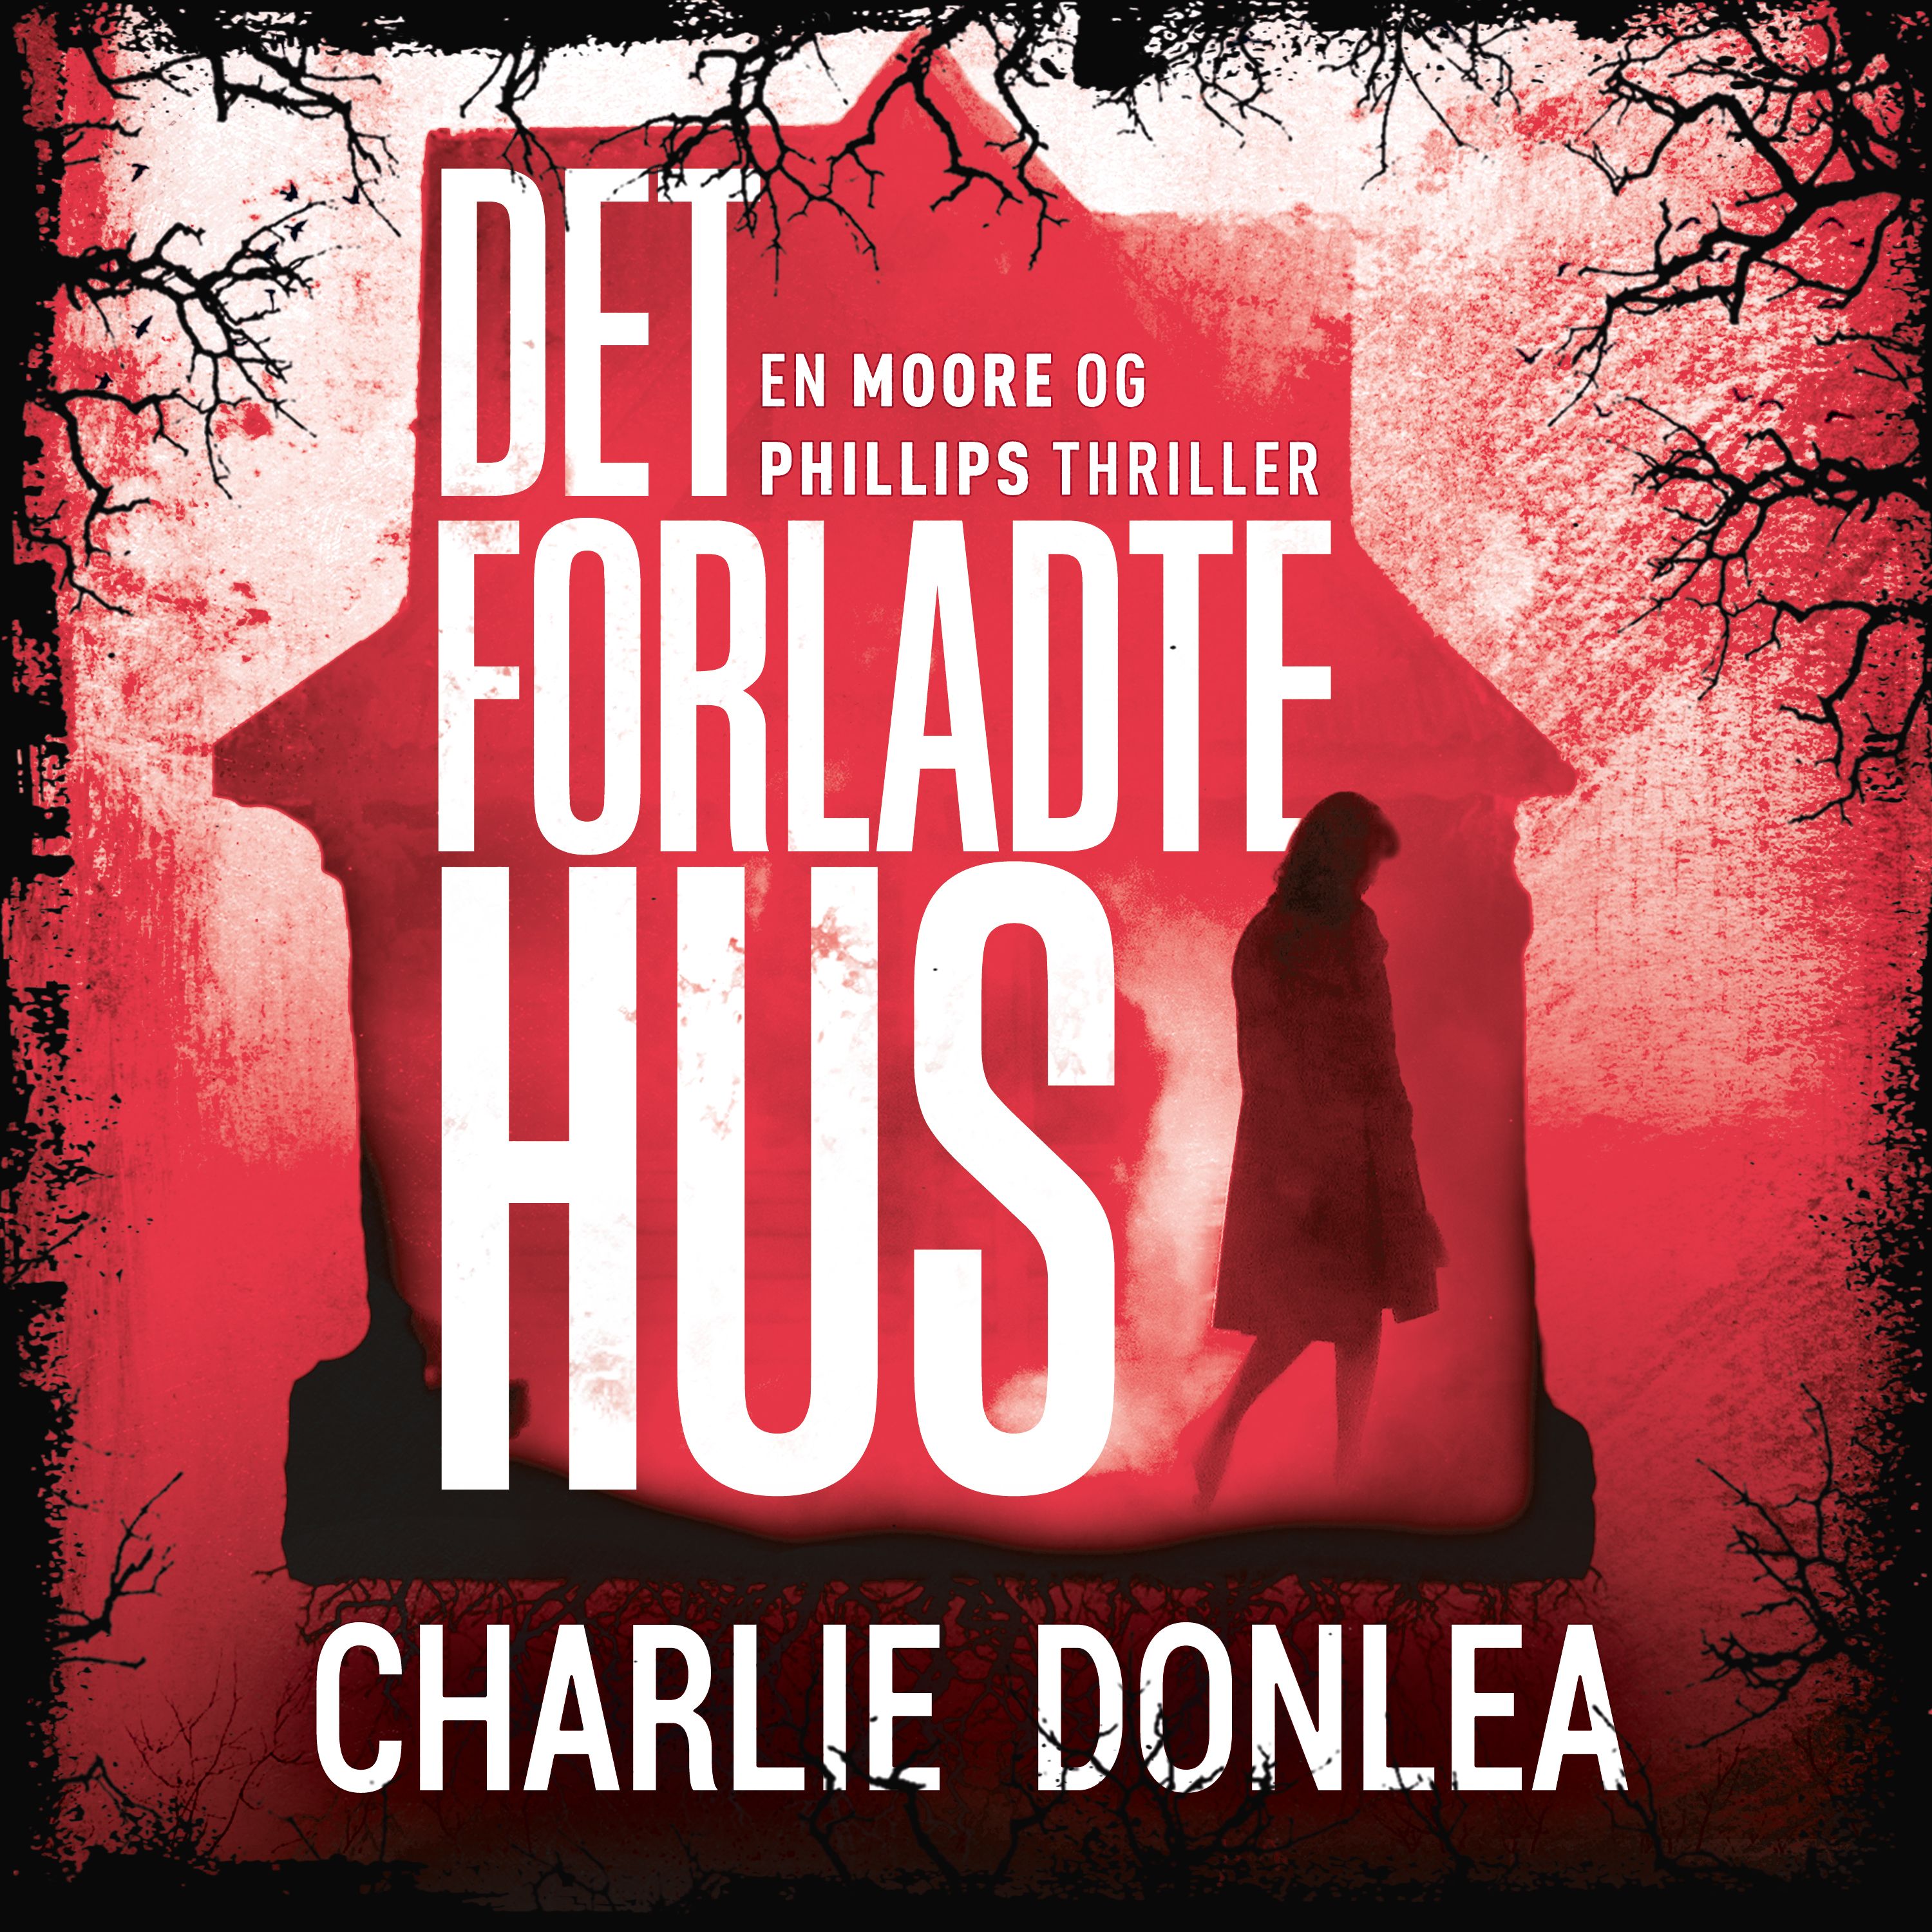 Det forladte hus, ljudbok av Charlie Donlea